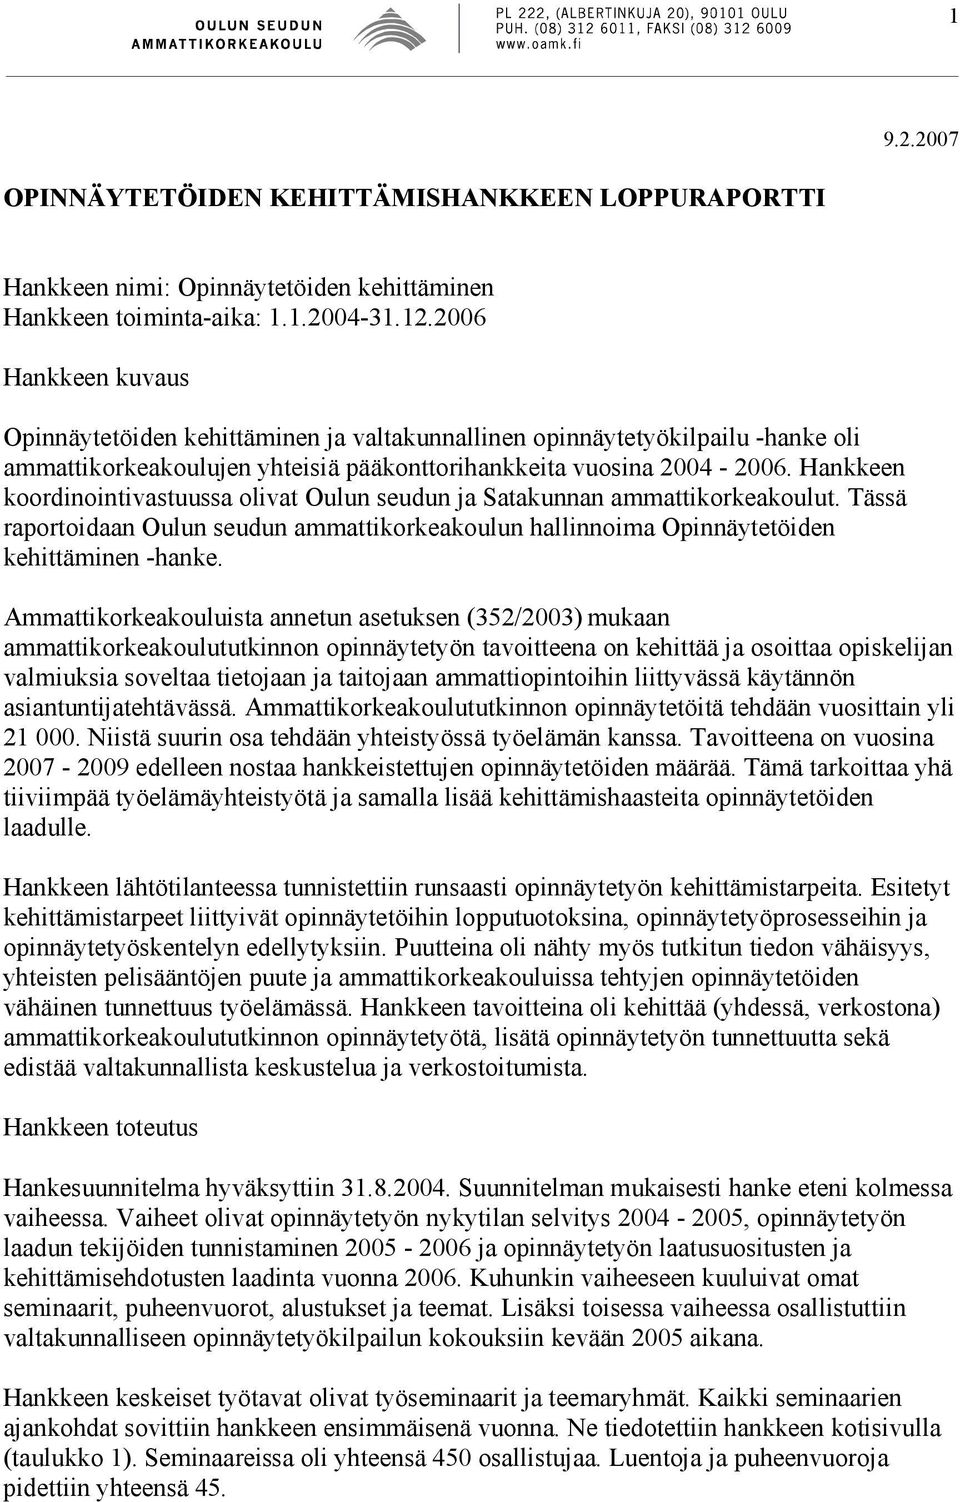 Hankkeen koordinointivastuussa olivat Oulun seudun ja Satakunnan ammattikorkeakoulut. Tässä raportoidaan Oulun seudun ammattikorkeakoulun hallinnoima Opinnäytetöiden kehittäminen -hanke.